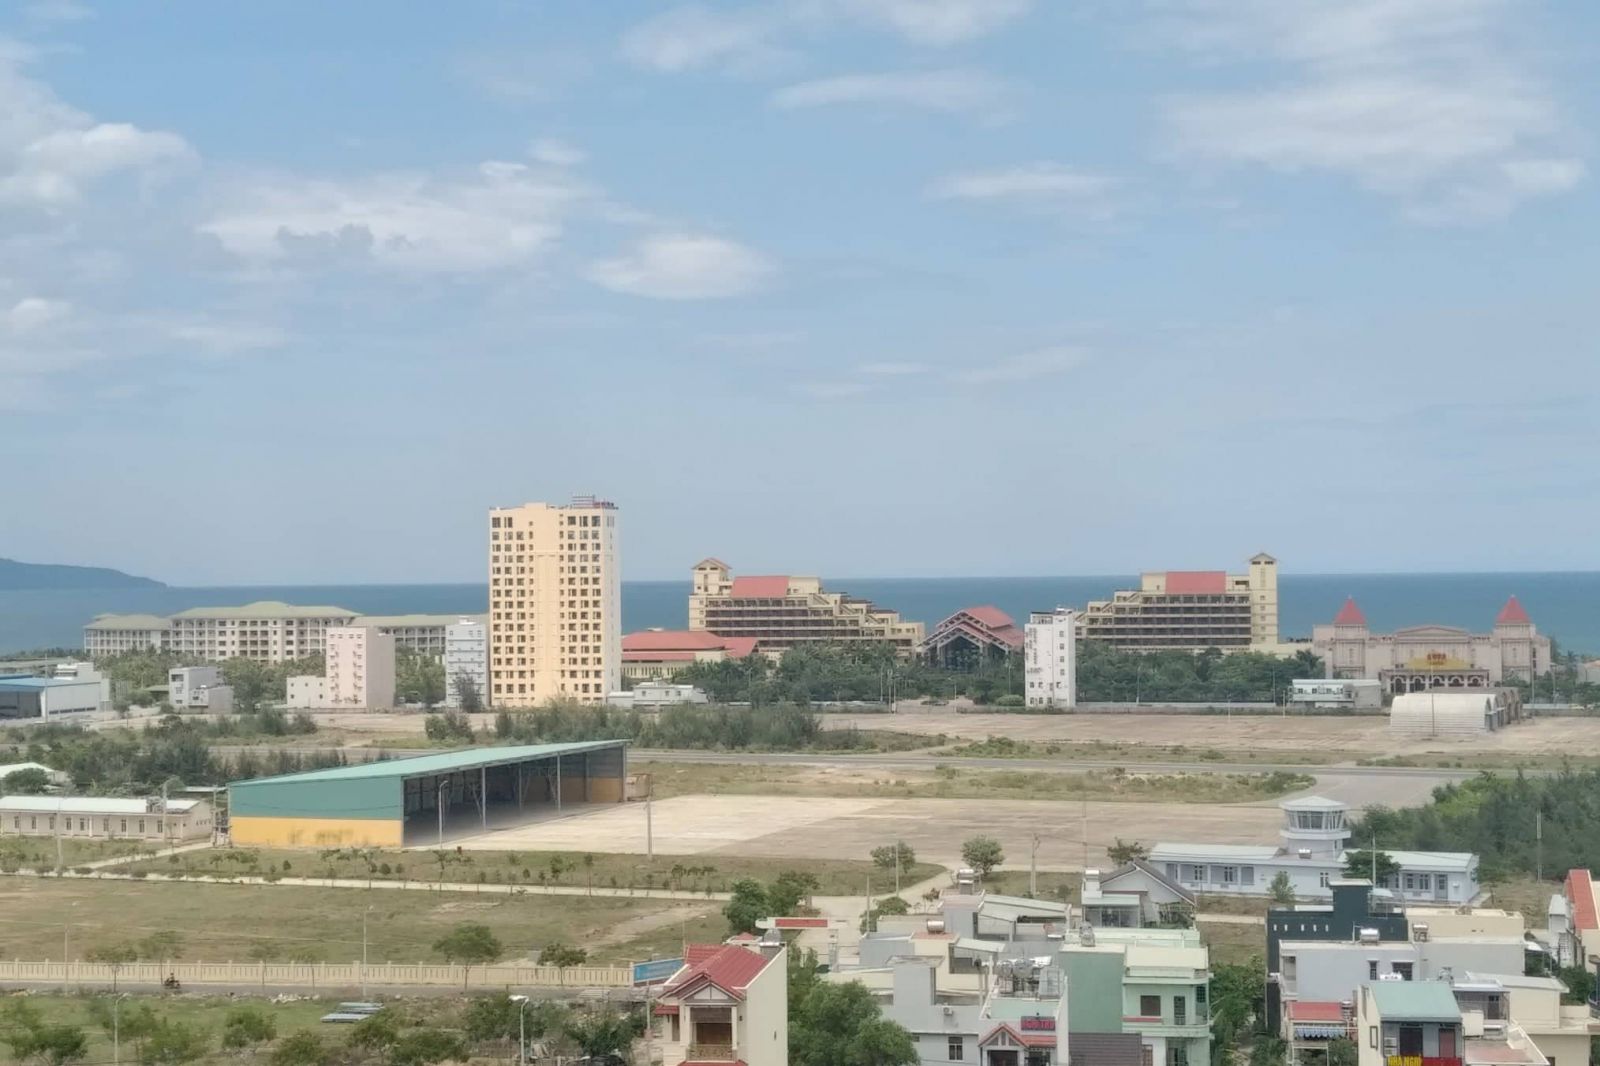 Hiện có 21 trường hợp người Trung Quốc có tên trong quyền sử dụng đất ở khu vực dự án đô thị dọc sân bay Nước Mặn, Đà Nẵng.